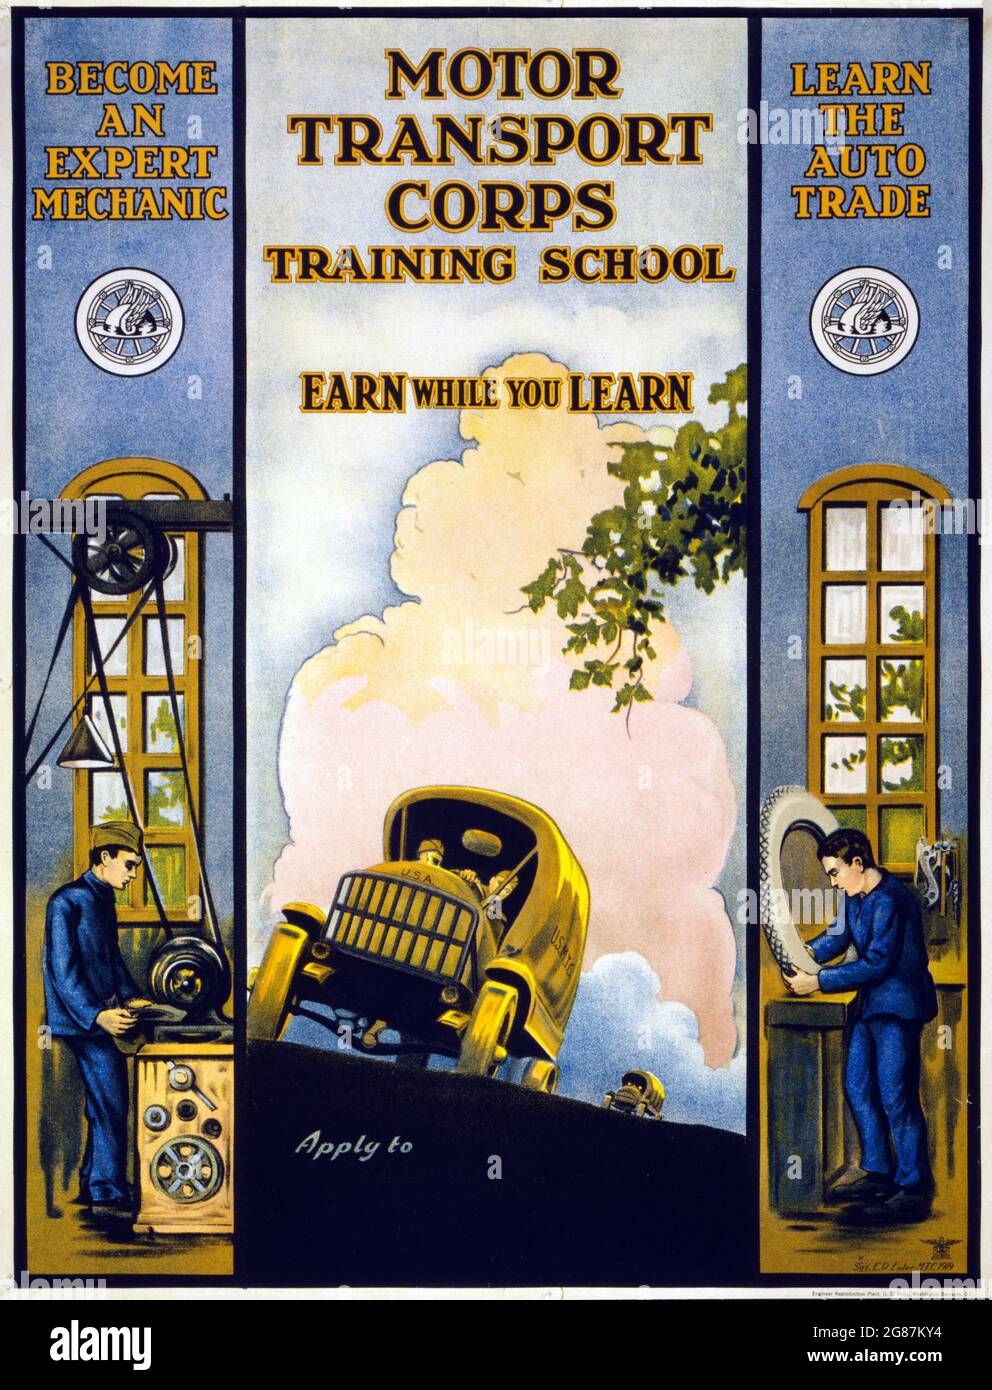 Anuncio vintage. La escuela de entrenamiento del Cuerpo de Transporte Motor gana mientras usted aprende. SGT. E. R. Euler, MTC 1919. Cuerpo de Transporte de Automóviles del Ejército de los Estados Unidos. Foto de stock